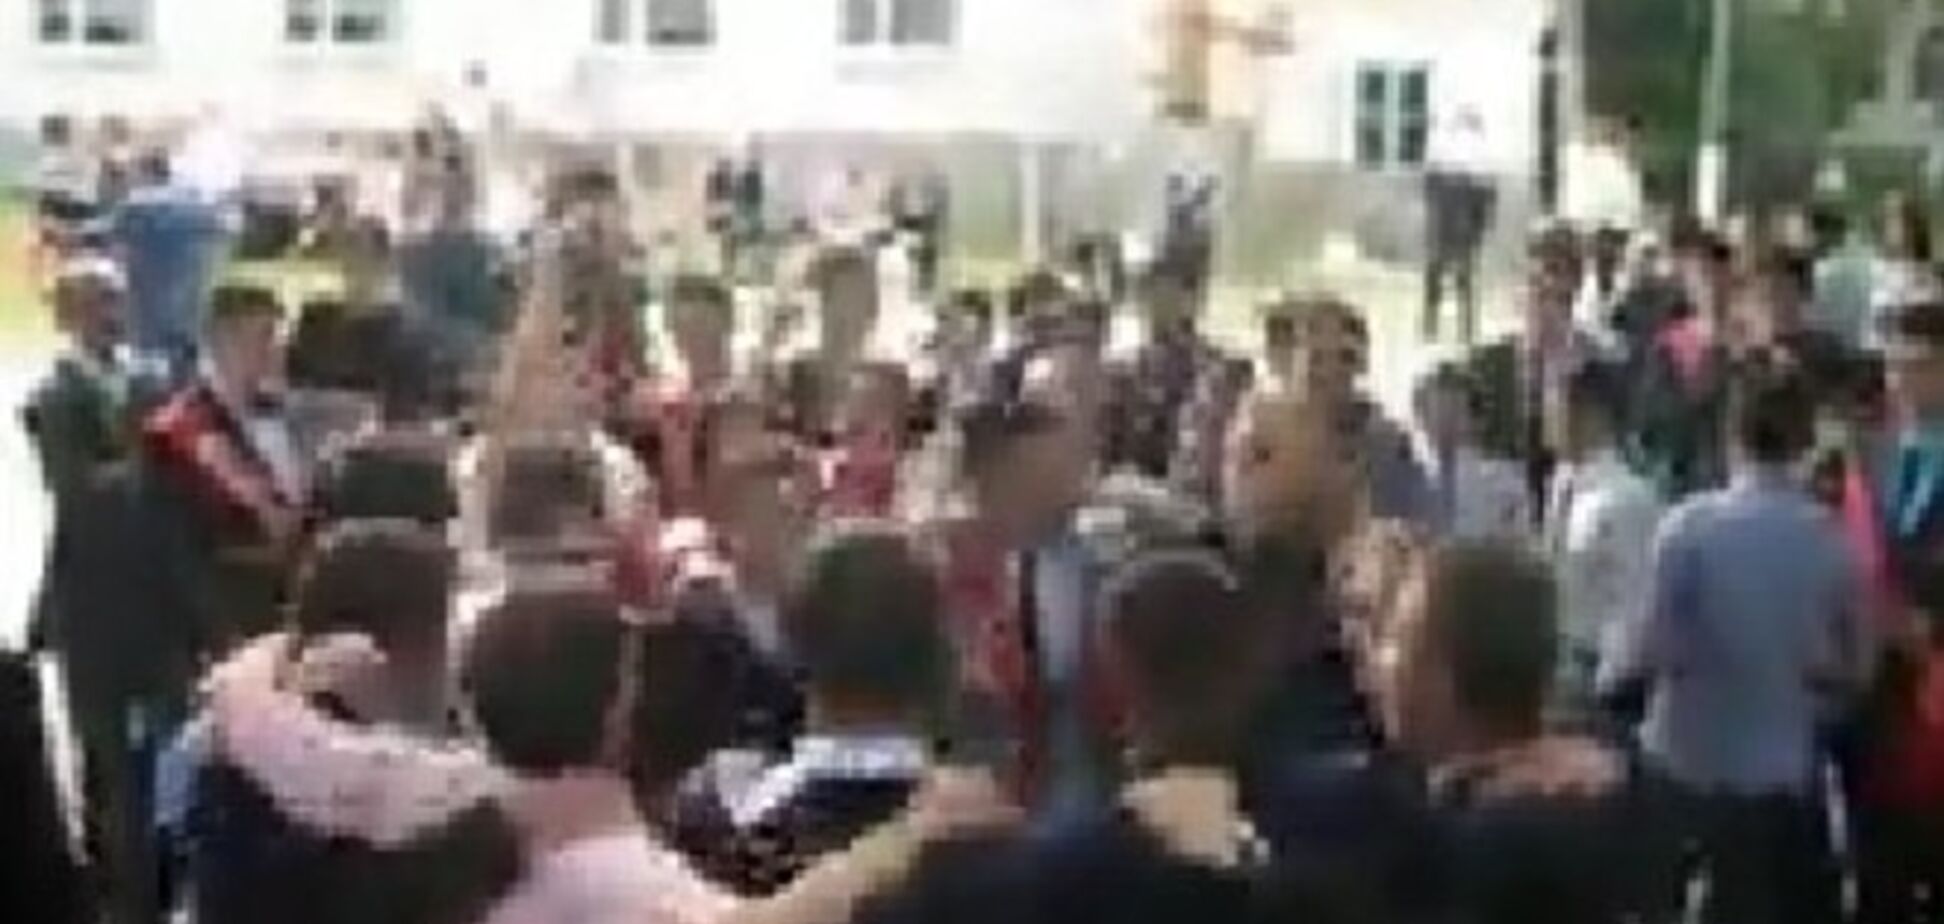 У мережі з'явилося відео, як кримські випускники танцювали під кричалку 'Хто НЕ скаче - тієї москаль'